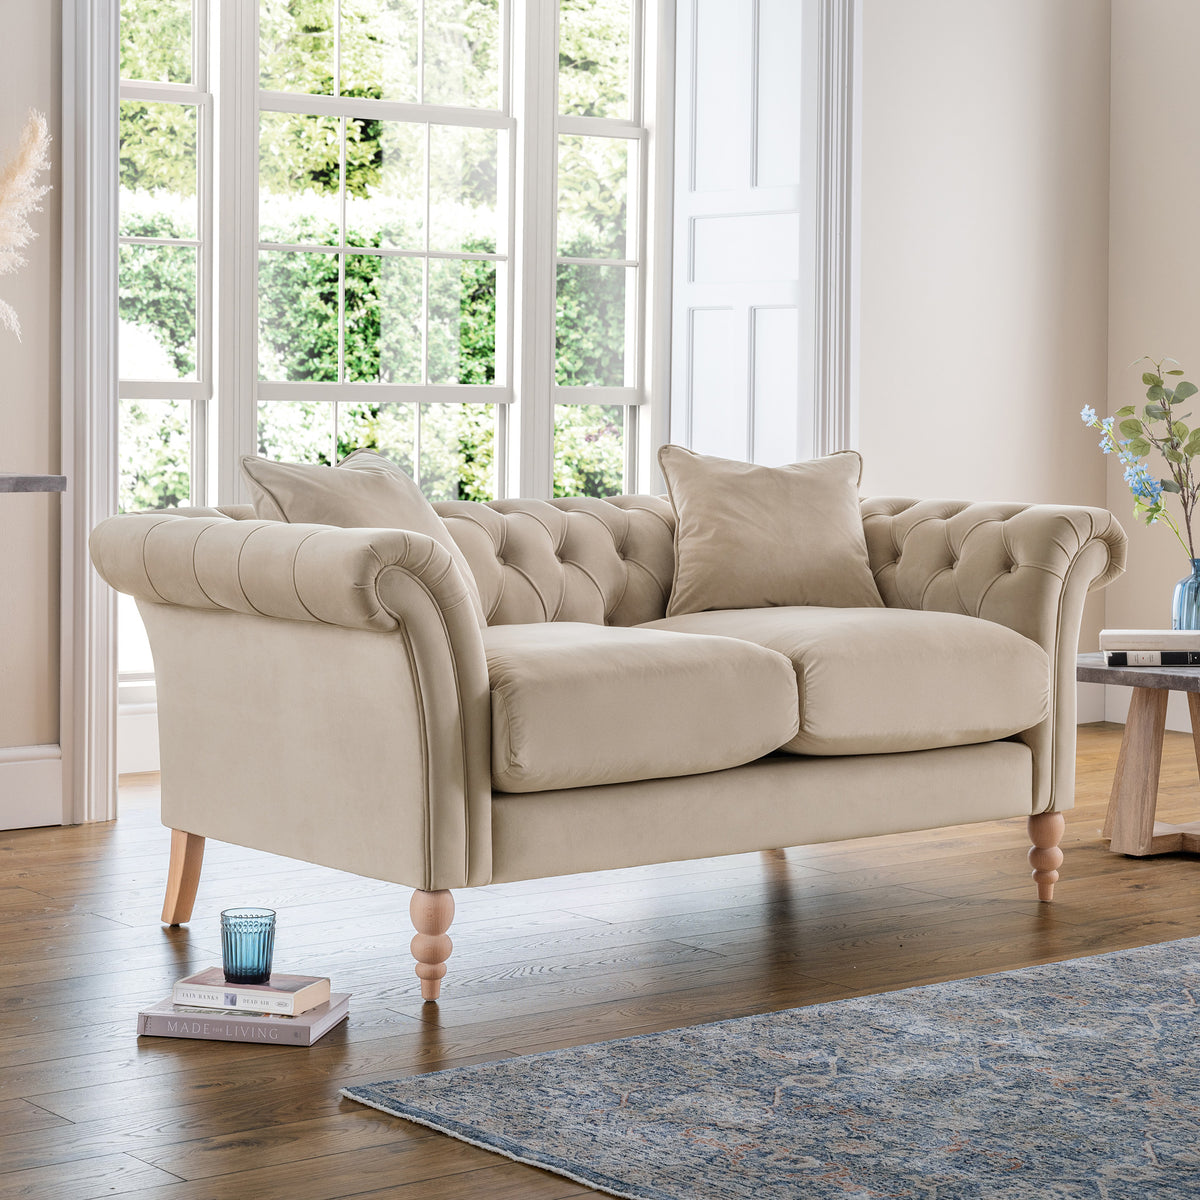 Balmoral Putty Velvet Chesterfield 2 Seater Sofa for living room